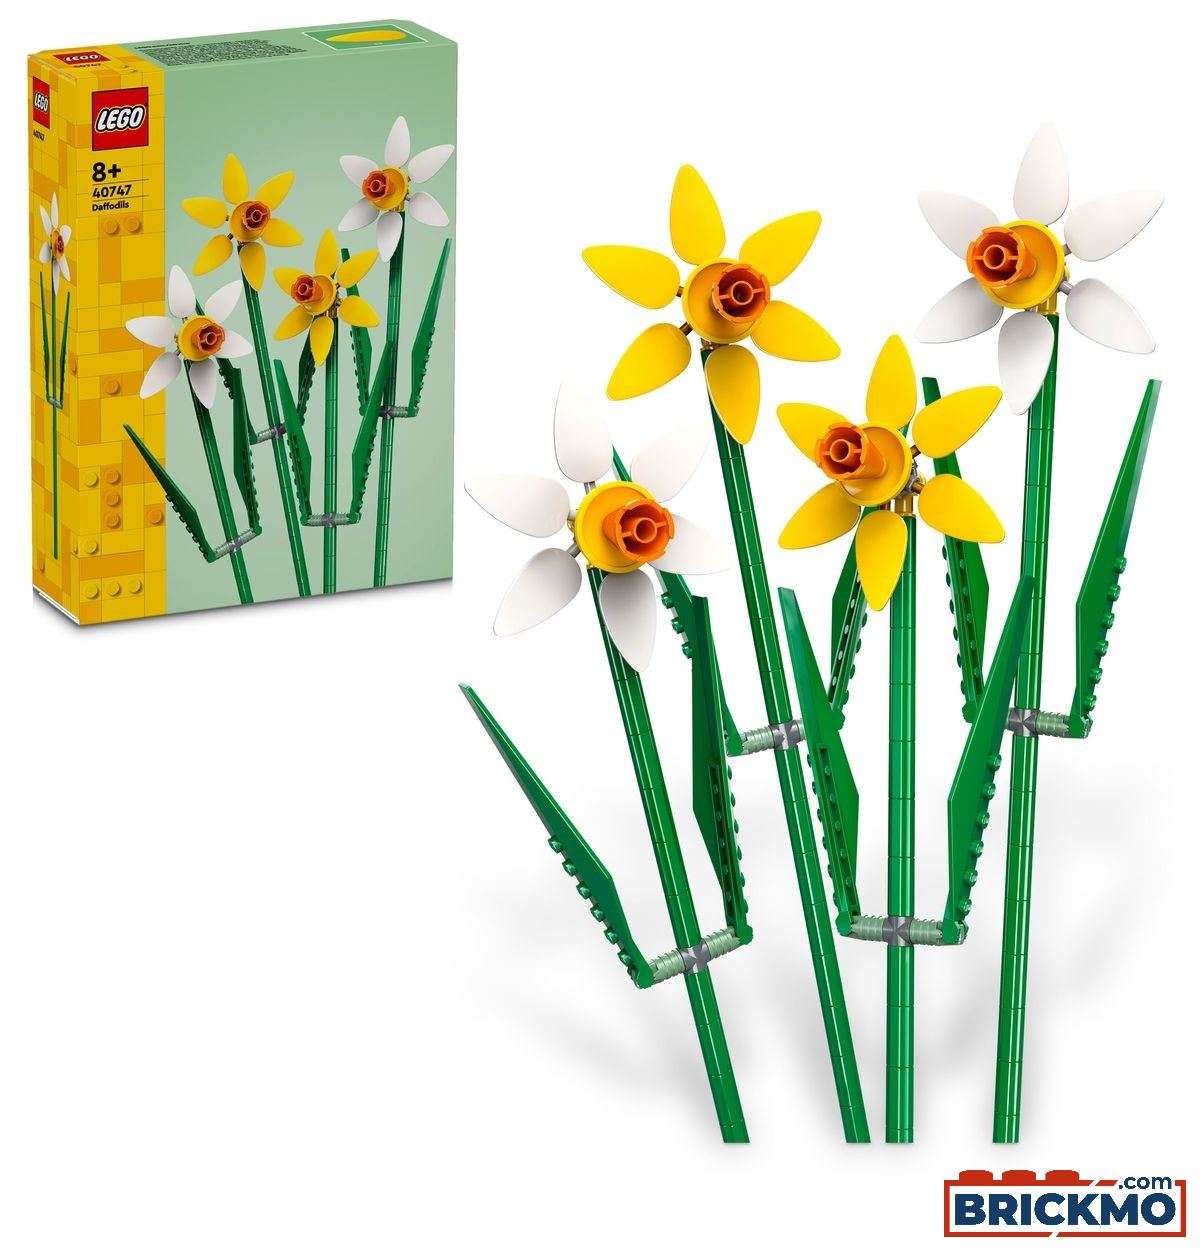 LEGO 40747 Daffodils 40747